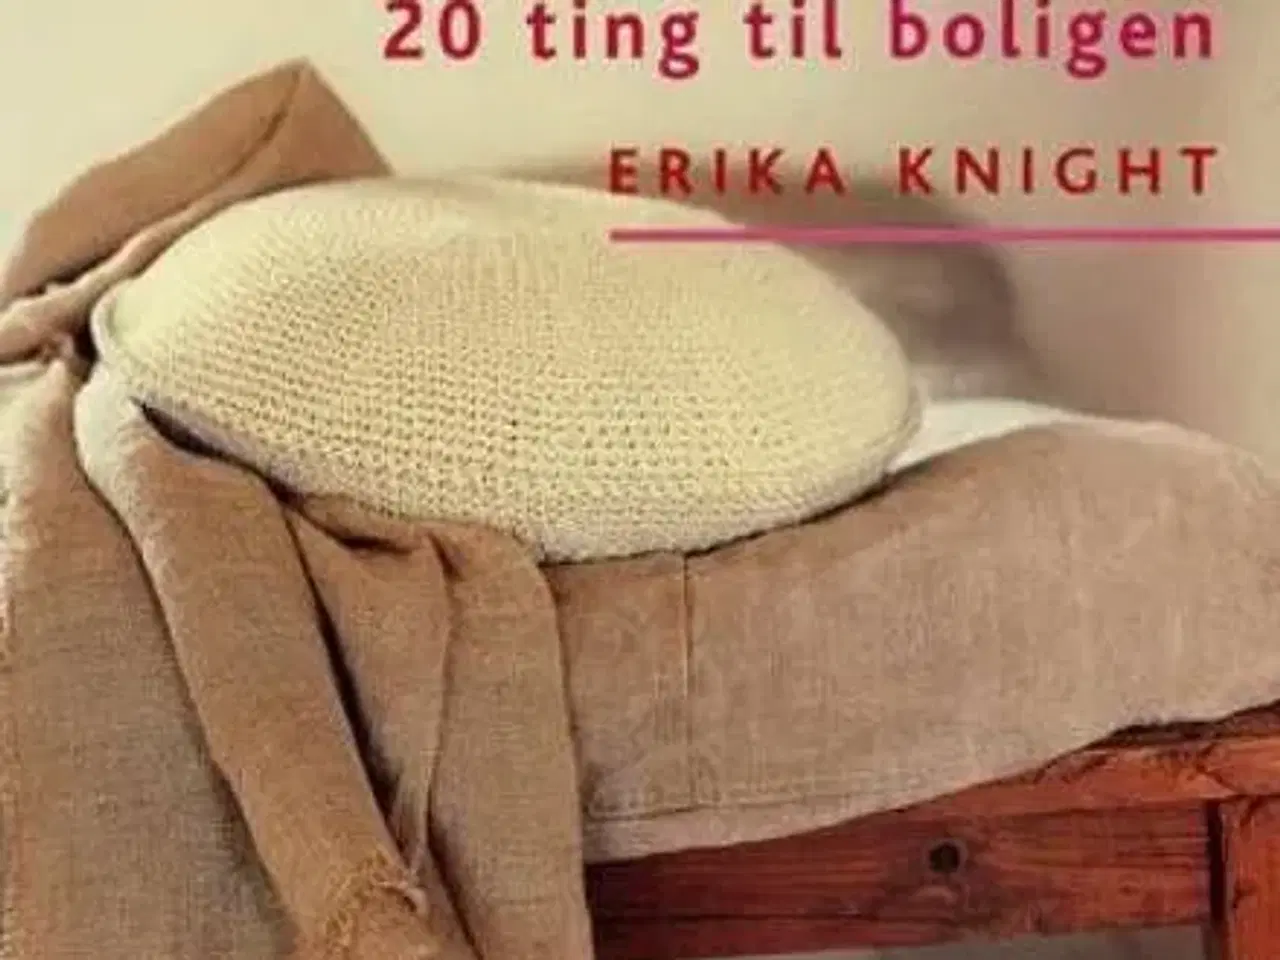 Billede 1 - Lær at hækle - 20 ting til boligen af Erika Knight